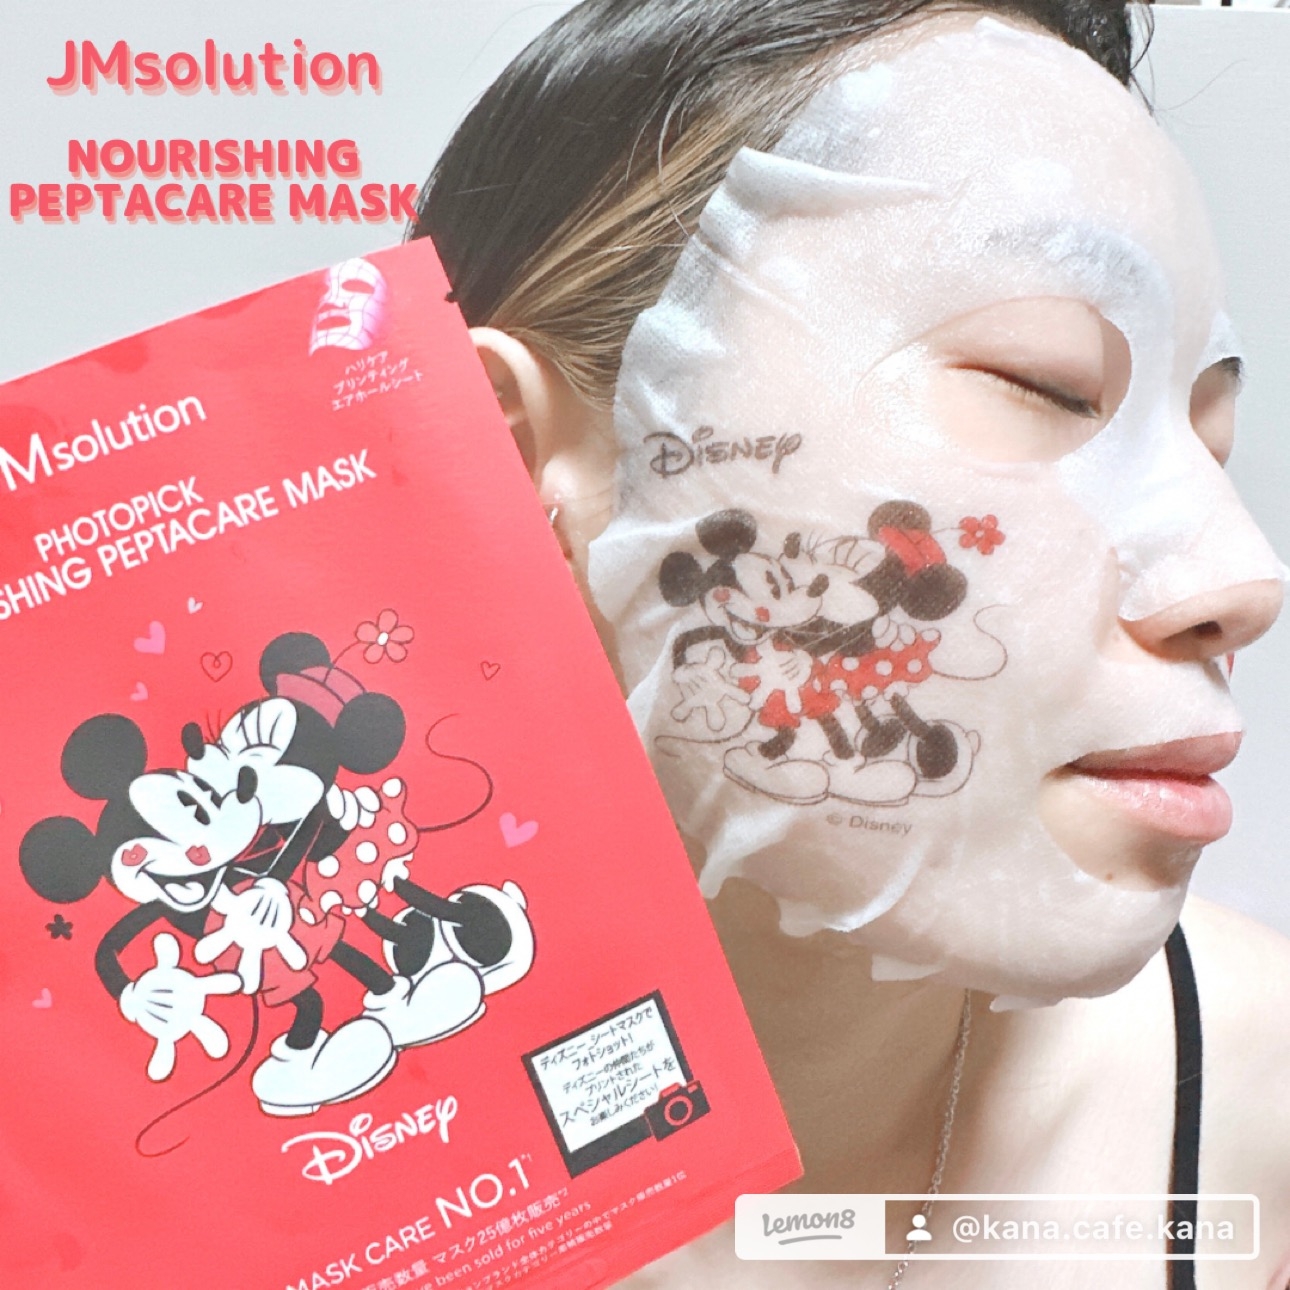 JMsolution(ジェイエムソリューション) フォトピック ナリシング ぺプタケア マスクの良い点・メリットに関するkana_cafe_timeさんの口コミ画像3